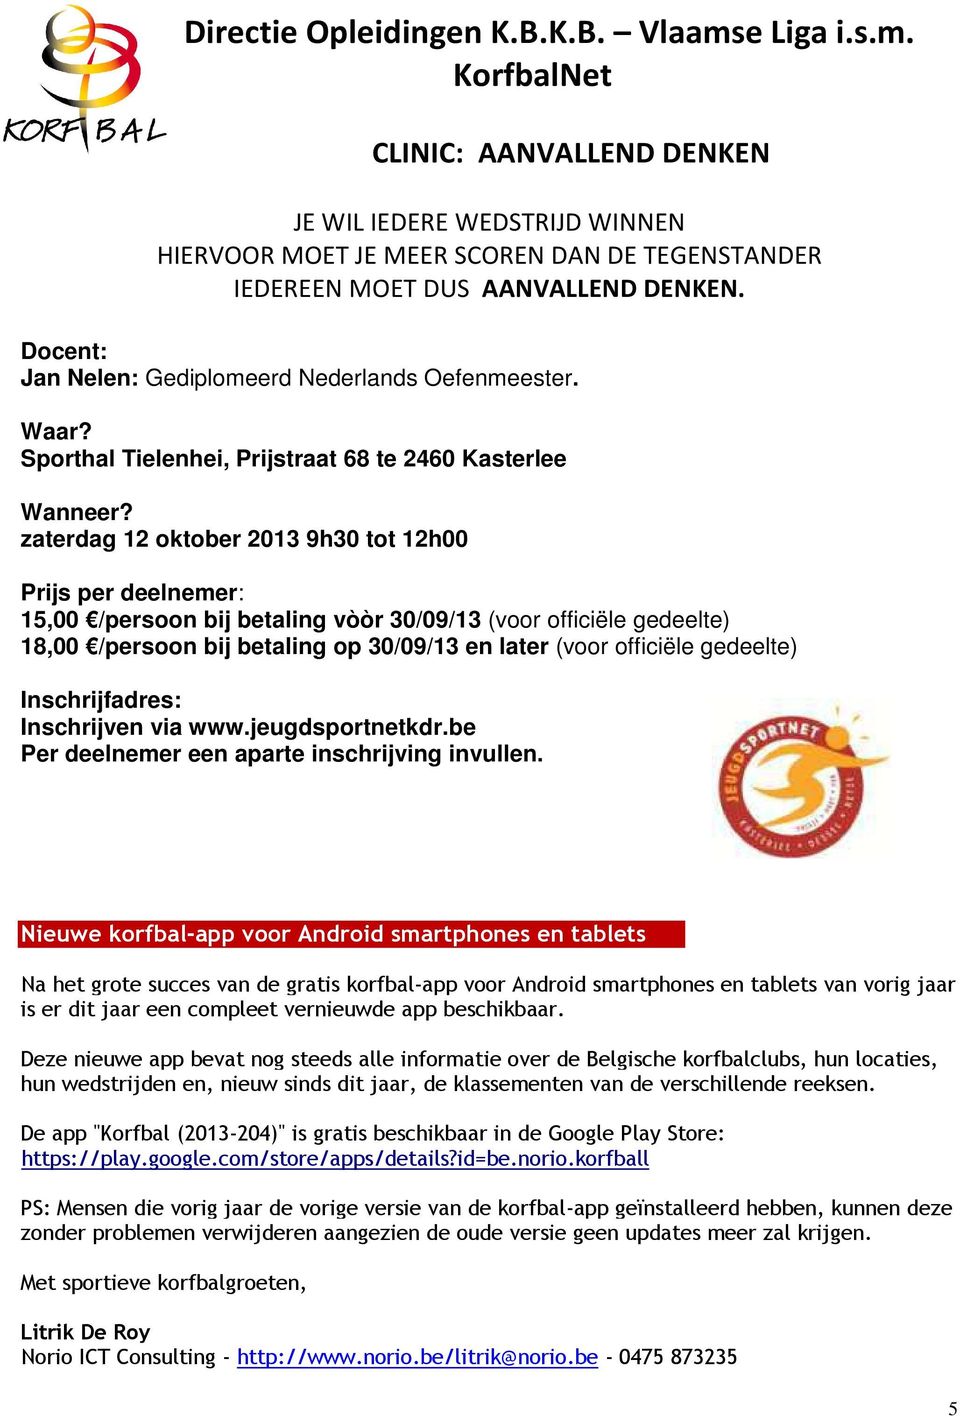 zaterdag 12 oktober 2013 9h30 tot 12h00 Prijs per deelnemer: 15,00 /persoon bij betaling vòòr 30/09/13 (voor officiële gedeelte) 18,00 /persoon bij betaling op 30/09/13 en later (voor officiële